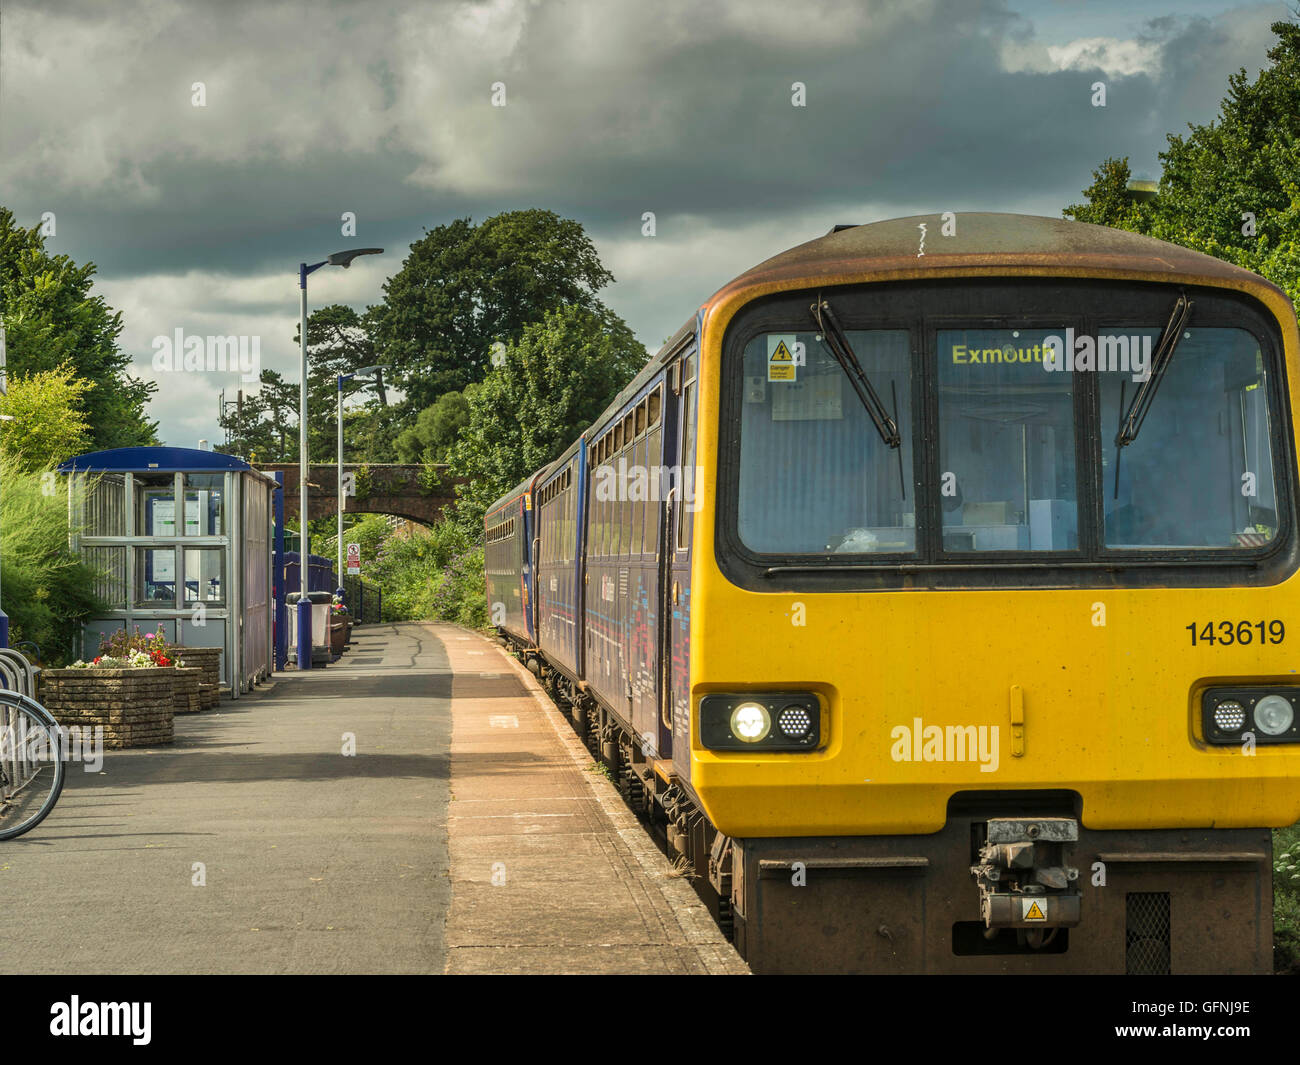 First Great Western train quitte la gare à destination de Lympstone jolie Exmouth le long de la pittoresque ligne Avocet. Banque D'Images